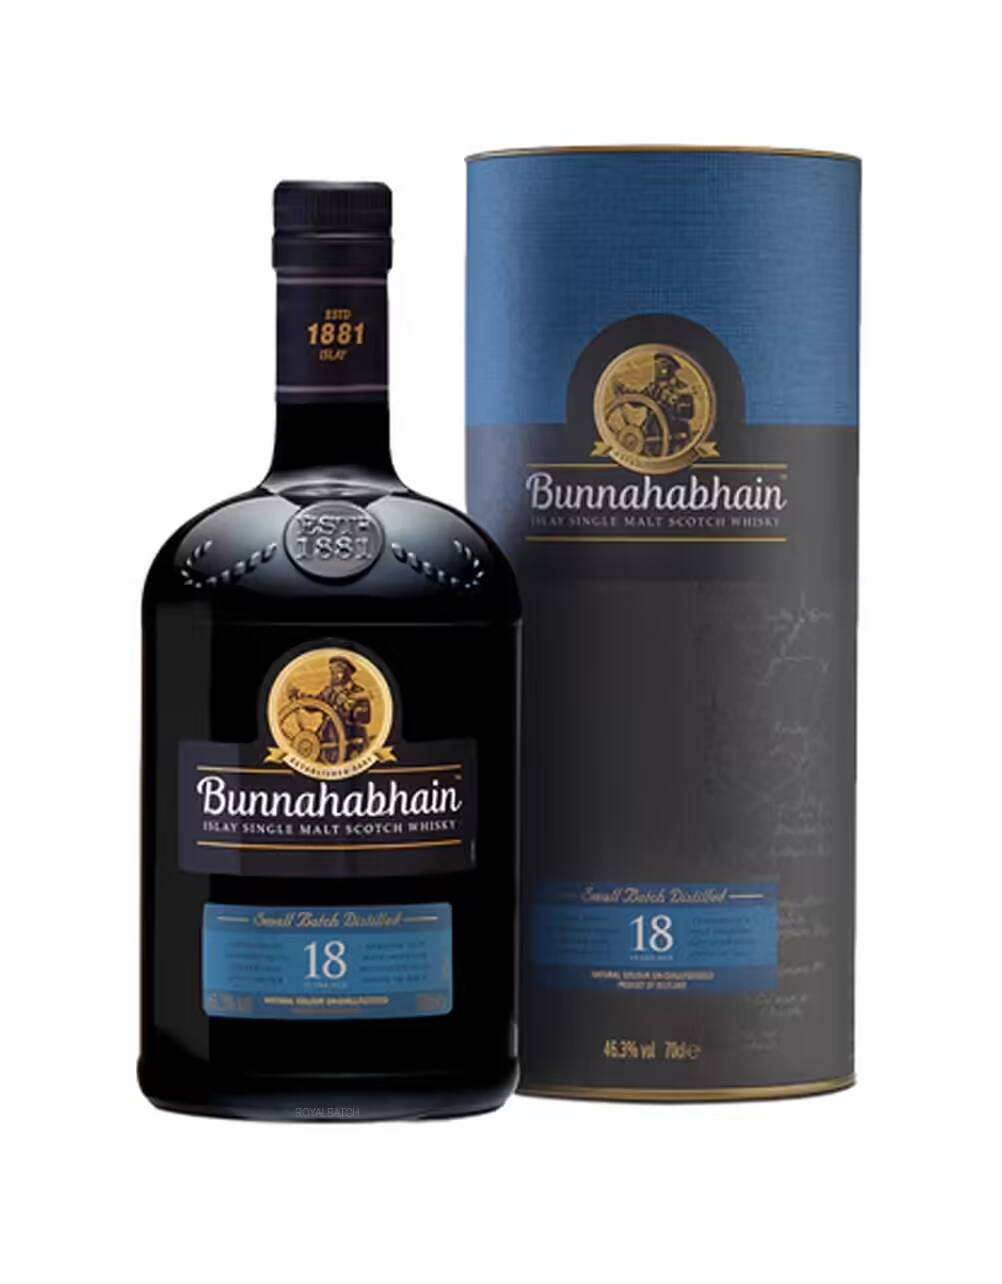 Bunnahabhain 18 Year Old Small Batch Single Malt Scotch Whisky